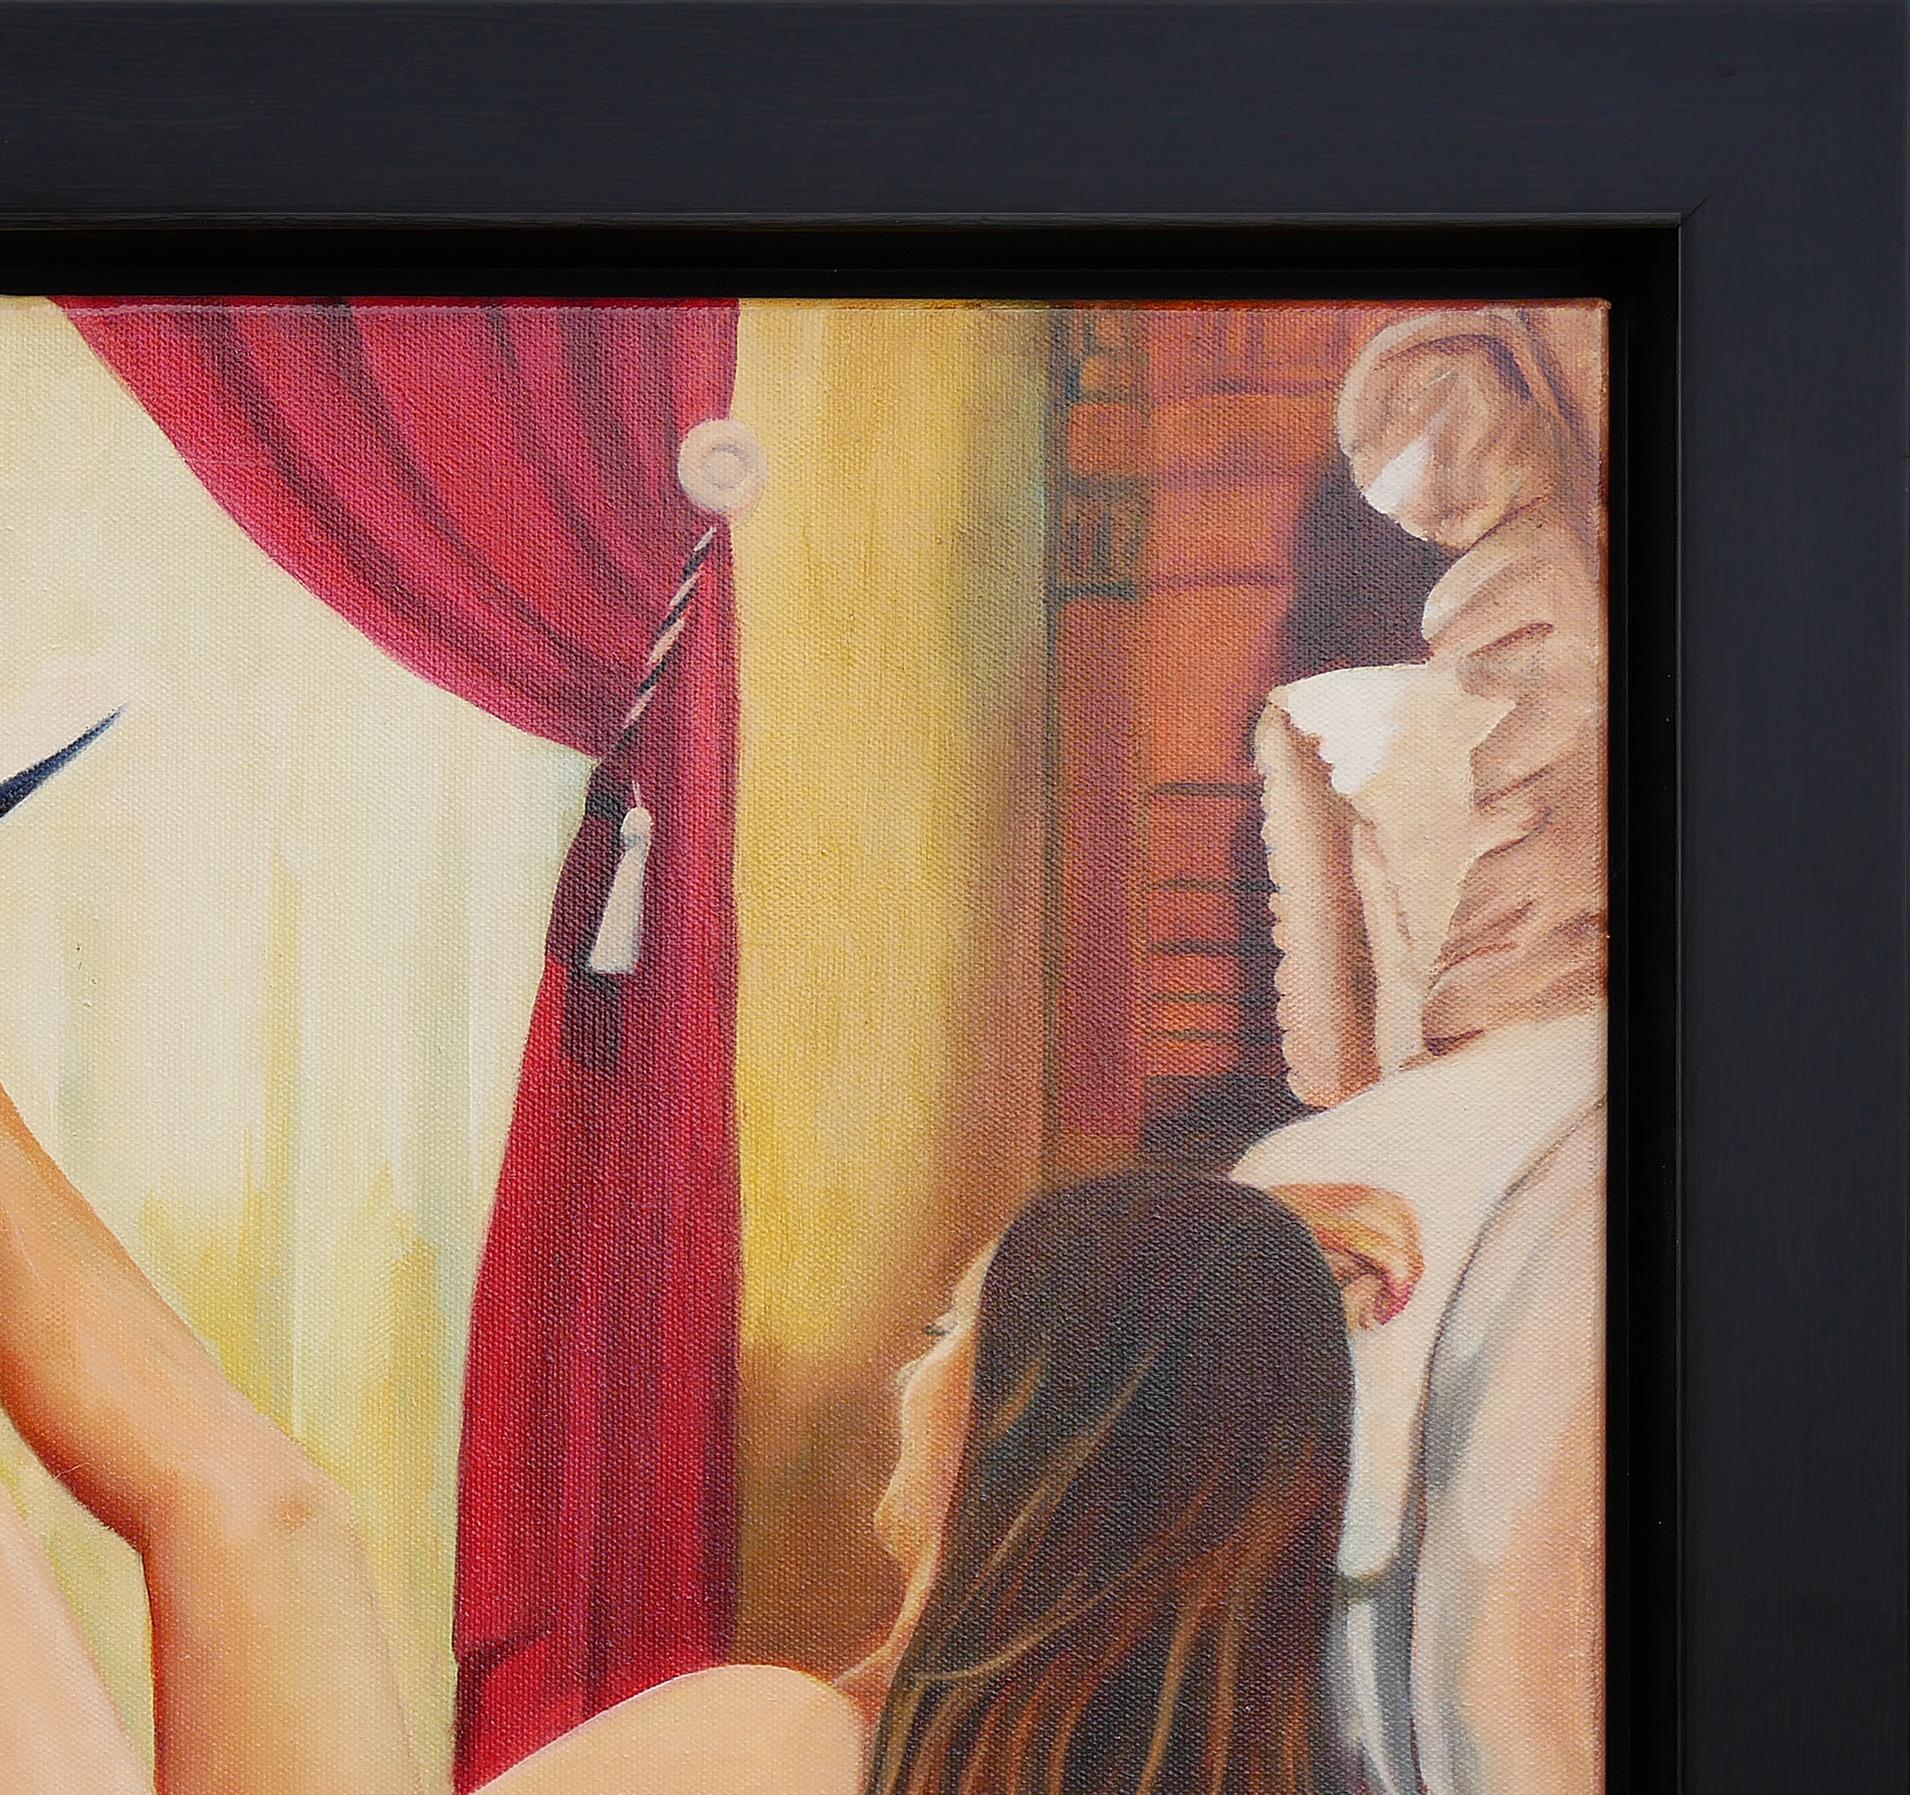 Peinture figurative abstraite contemporaine aux tons chauds de l'artiste texan Bob Shepherd. La peinture représente une femme avec un chapeau de cow-boy noir en équilibre sur son pied. La femme est dans une petite baignoire en fer blanc située dans